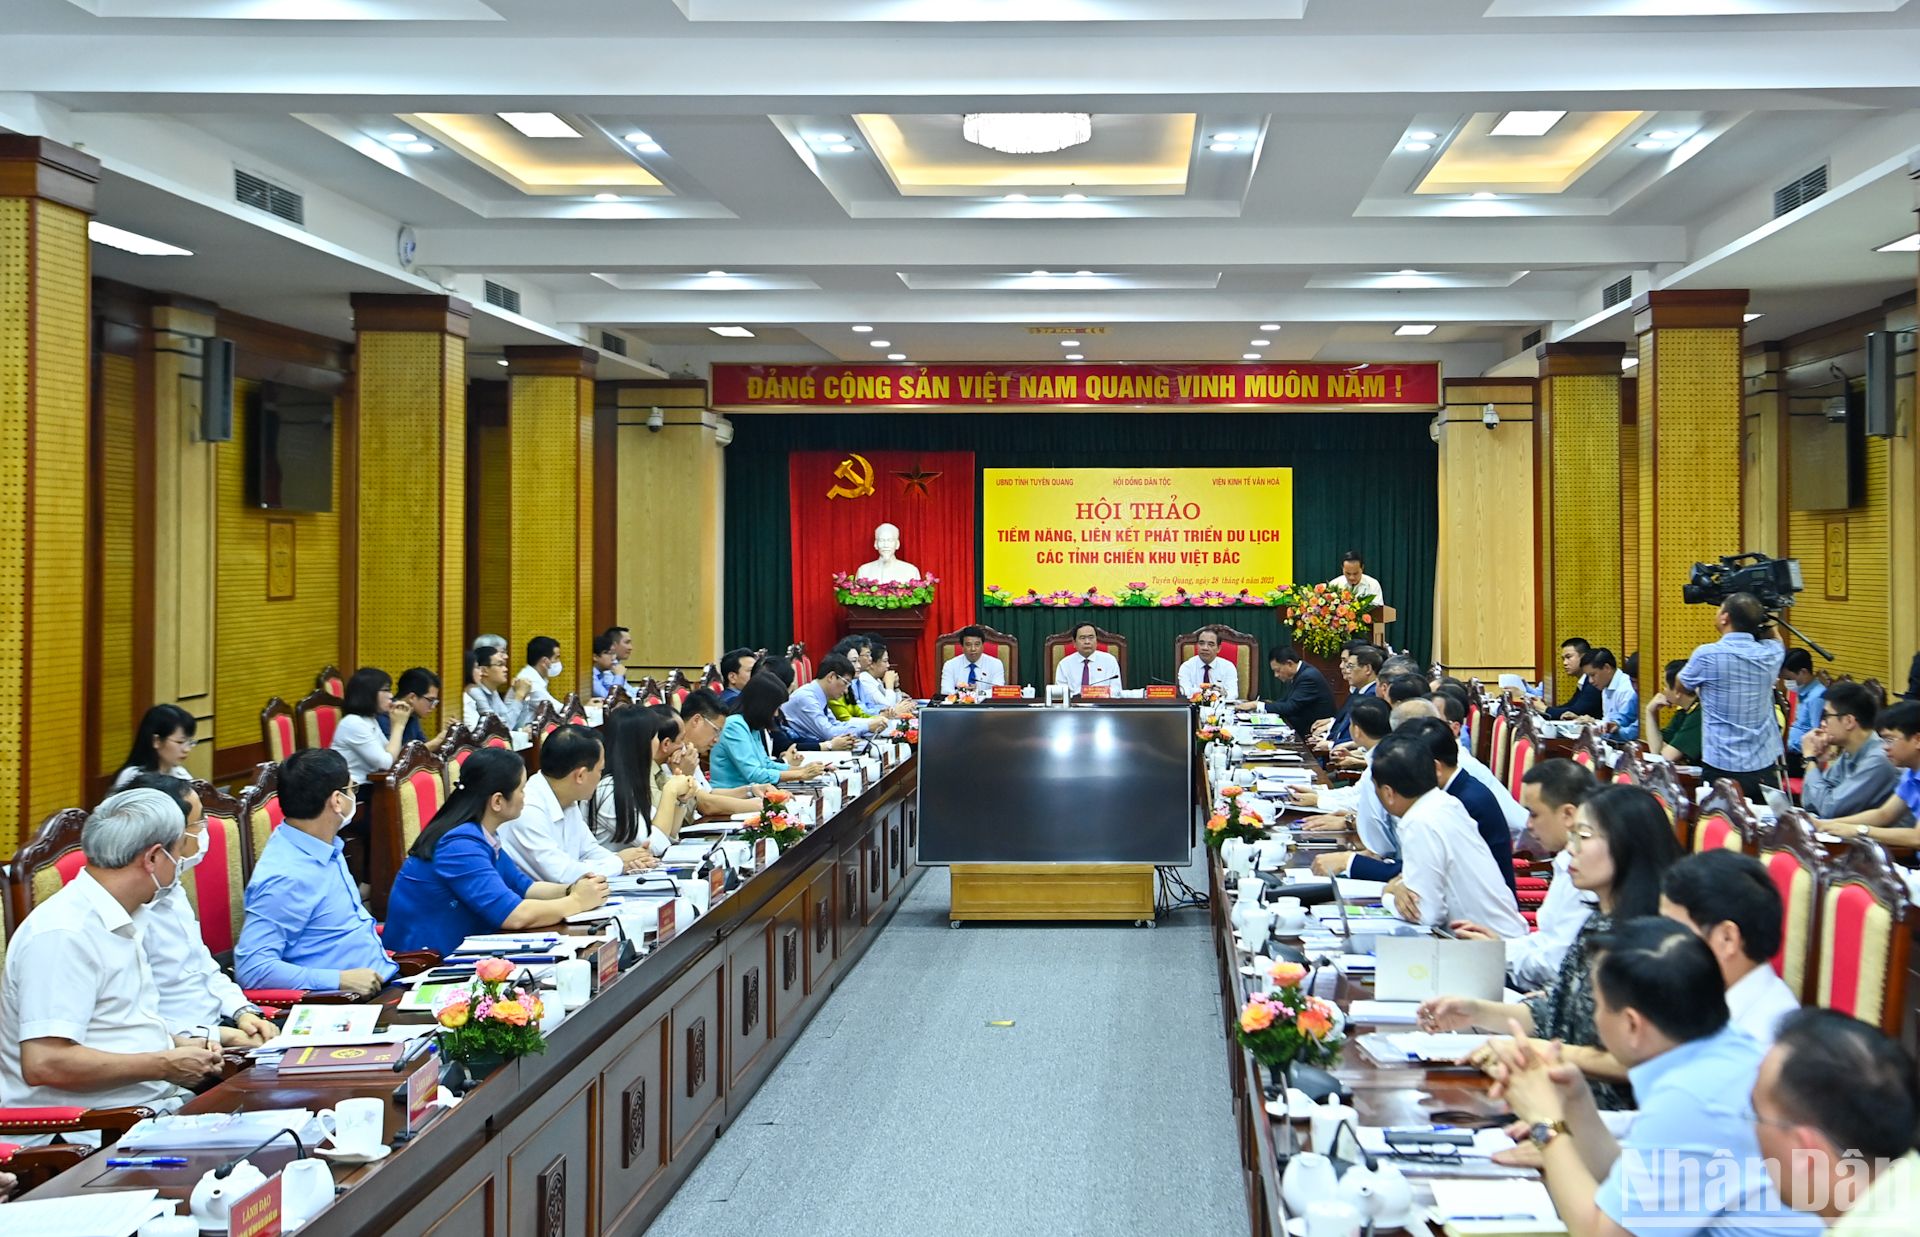 Quang cảnh hội thảo "Tiềm năng, liên kết phát triển du lịch các tỉnh Chiến khu Việt Bắc" tổ chức tại tỉnh Tuyên Quang.